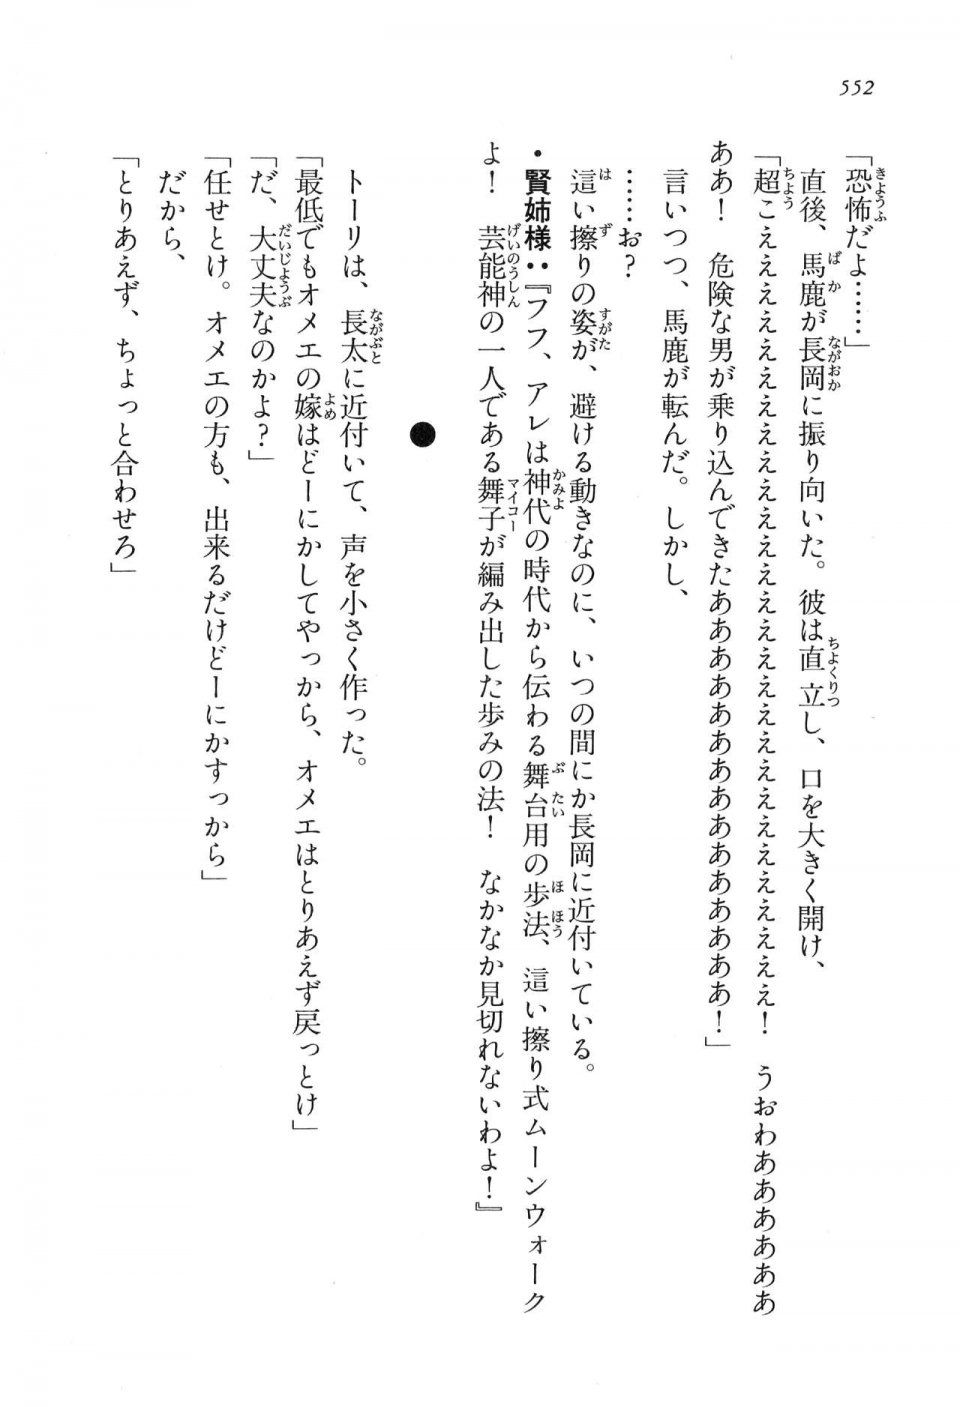 Kyoukai Senjou no Horizon LN Vol 16(7A) - Photo #552